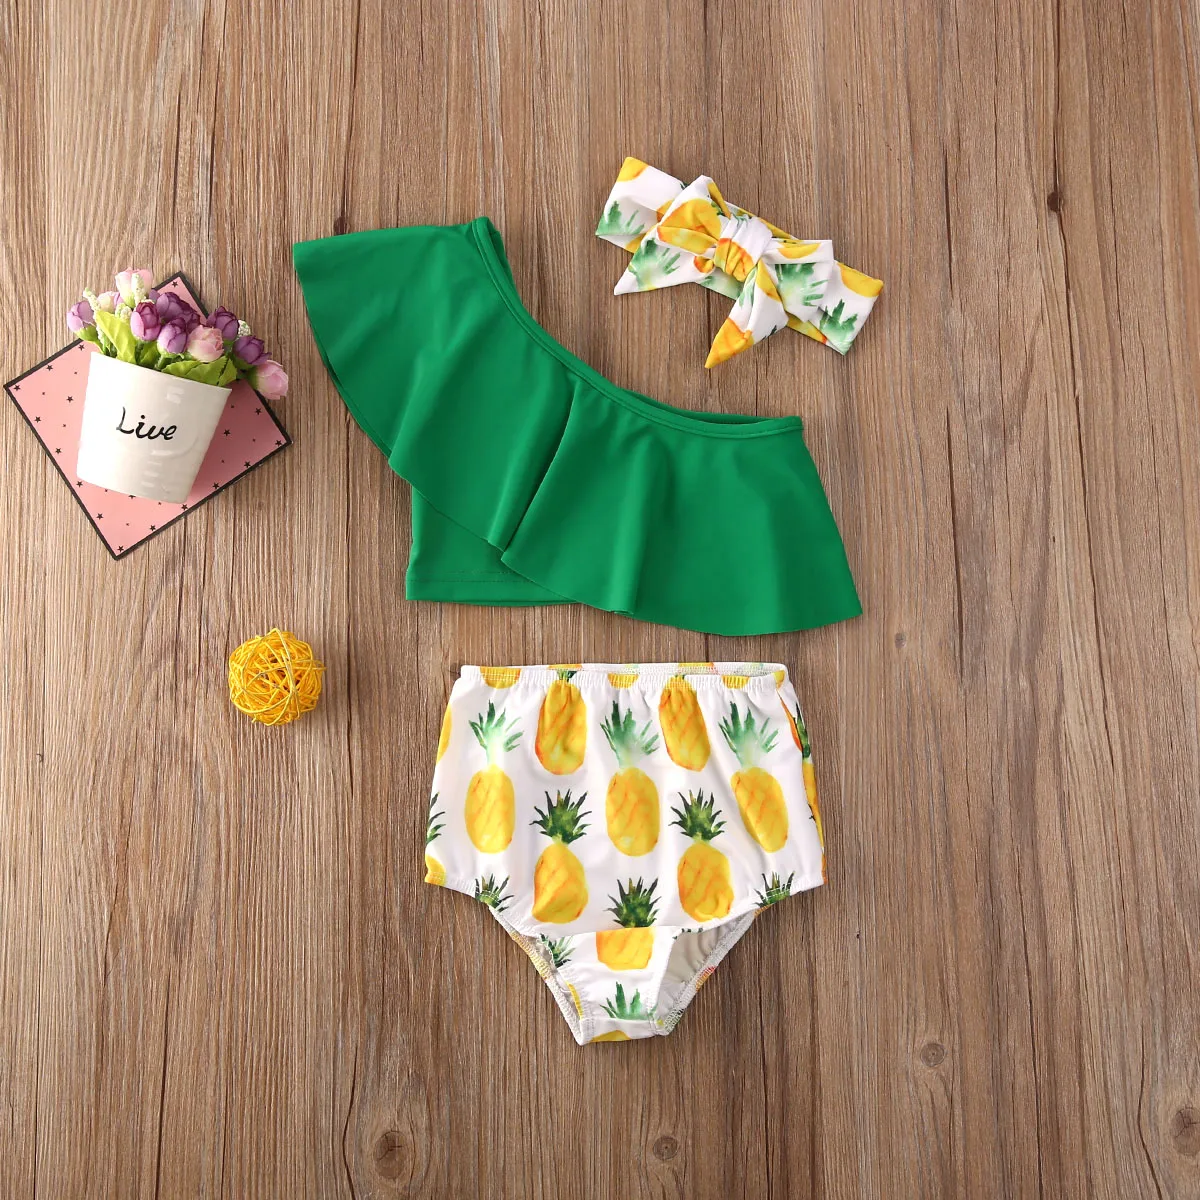 Летний купальный костюм для маленьких девочек, купальник с оборками и принтом ананаса, 3 предмета, купальный костюм, пляжная одежда, танкини, бикини, От 6 месяцев до 4 лет